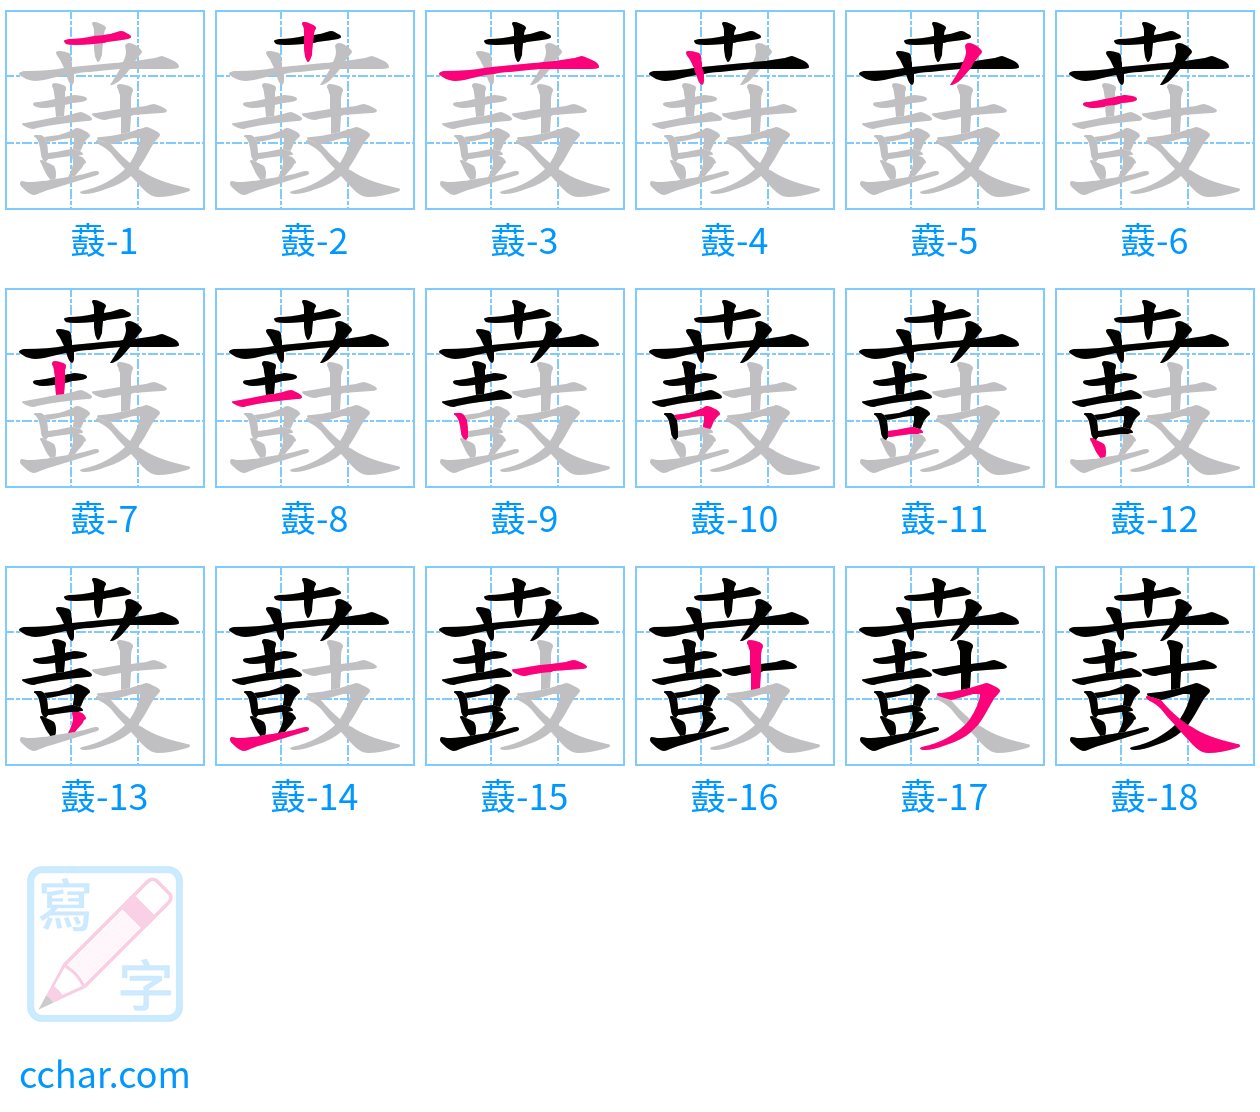 鼖 stroke order step-by-step diagram